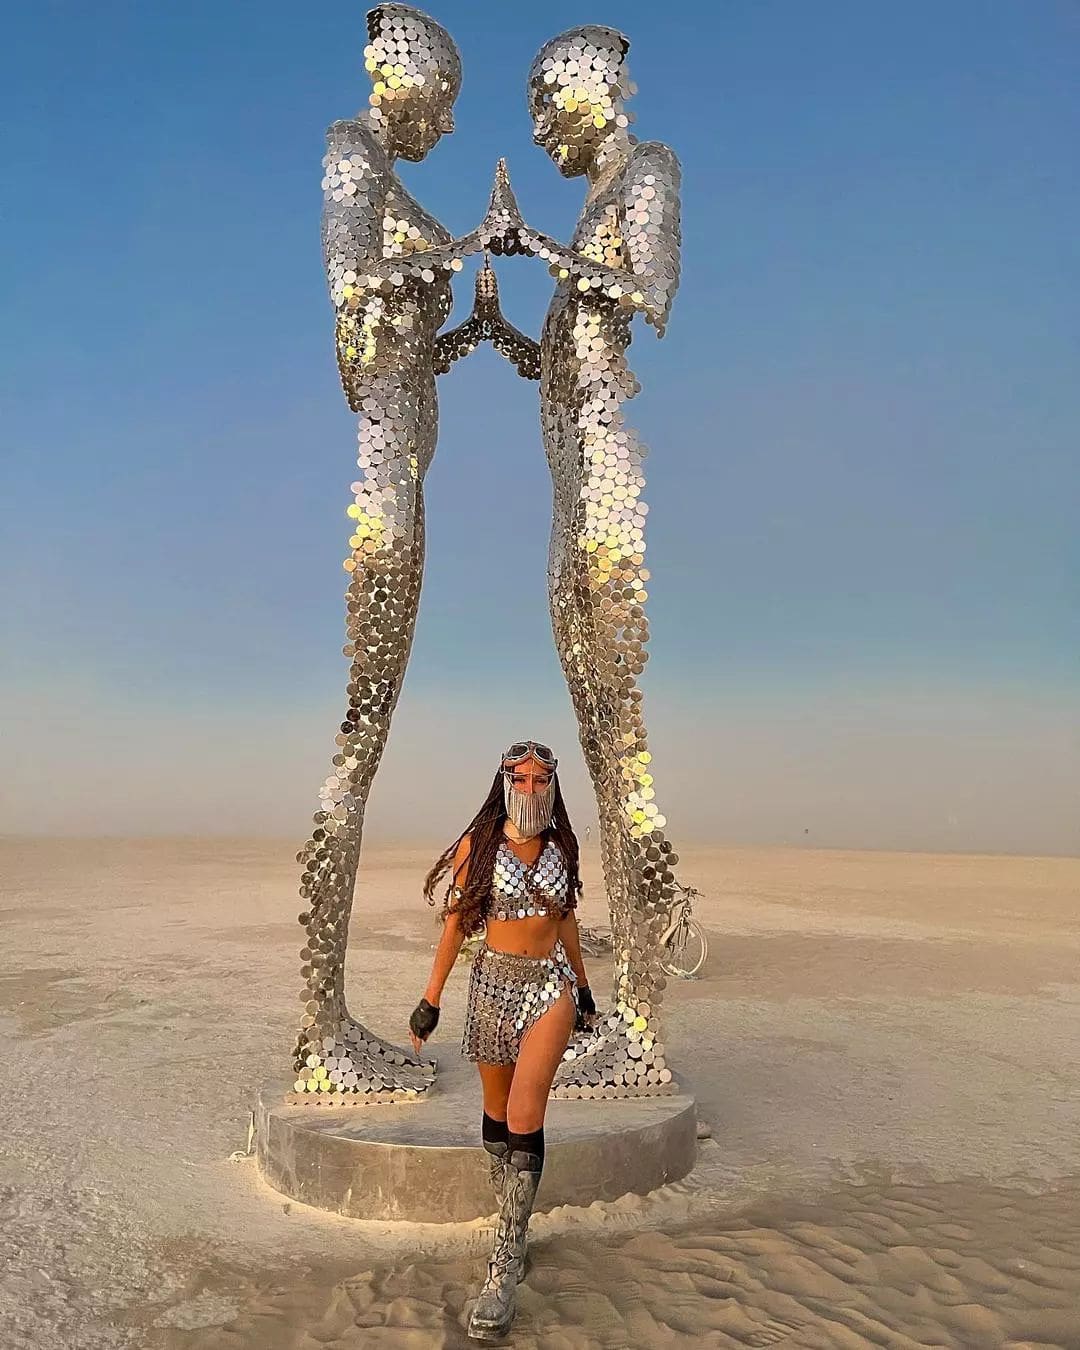 Огненный фестиваль Burning Man вернулся: 16 эпичных фотографий с самого горячего мероприятия планеты 60